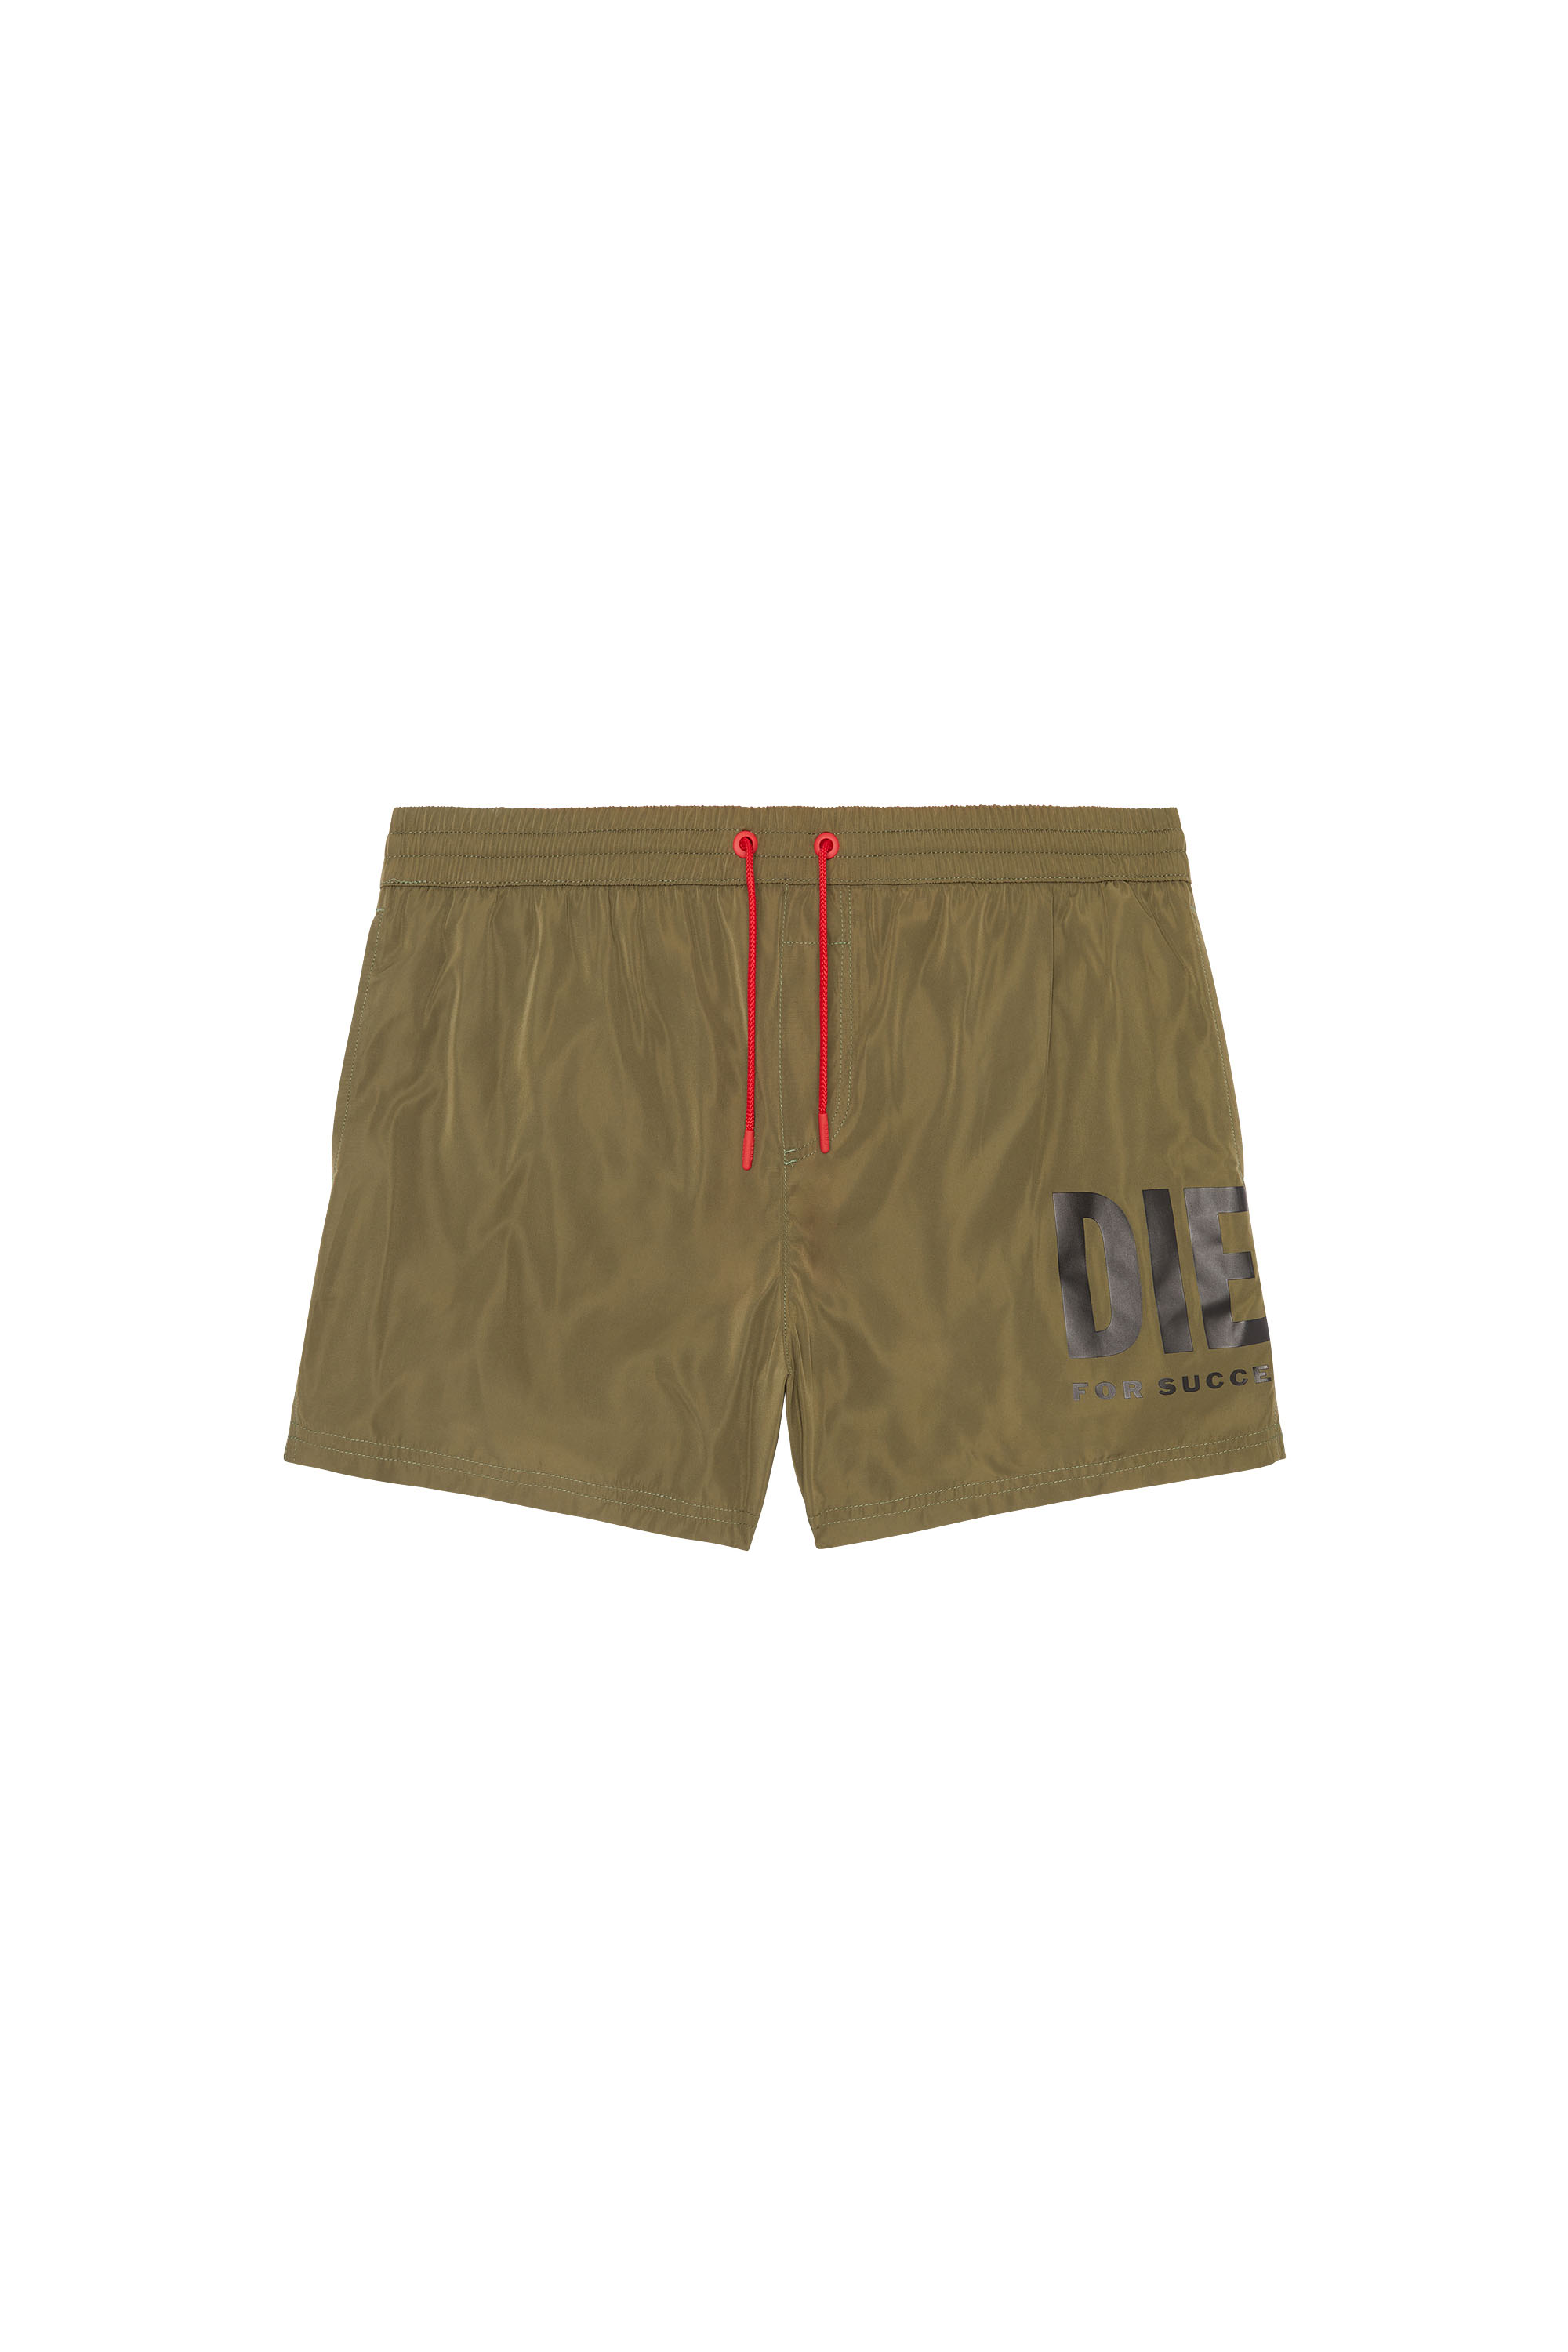 Diesel - Bade-Shorts mit großem Logo-Print - Badeshorts - Herren - Grün